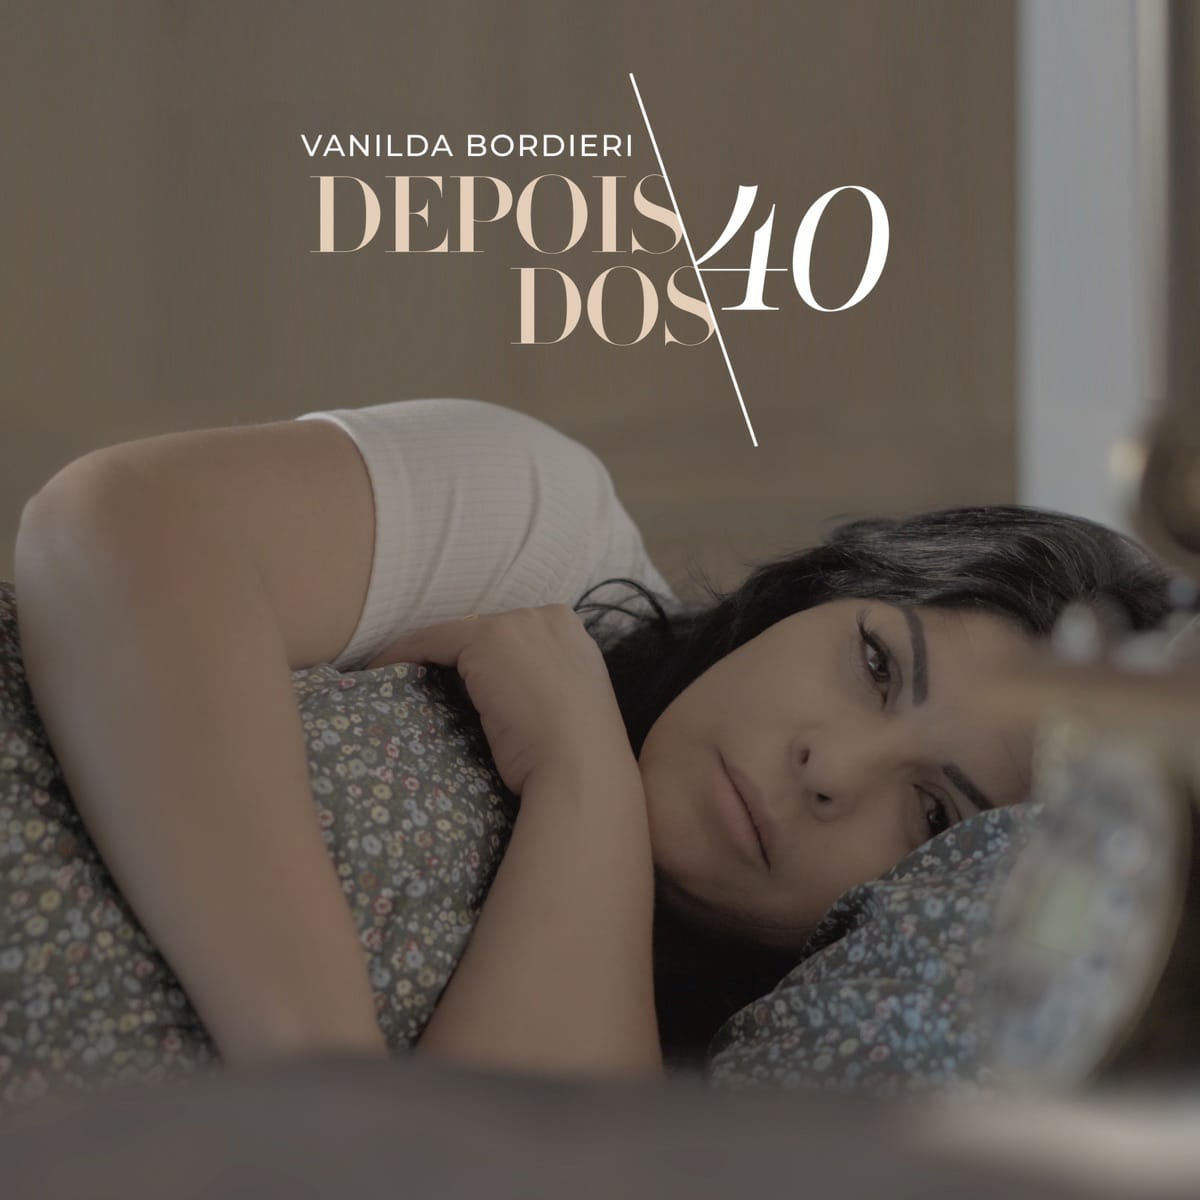 Vanilda Bordieri lança completo nas plataformas digitais o seu novo álbum!